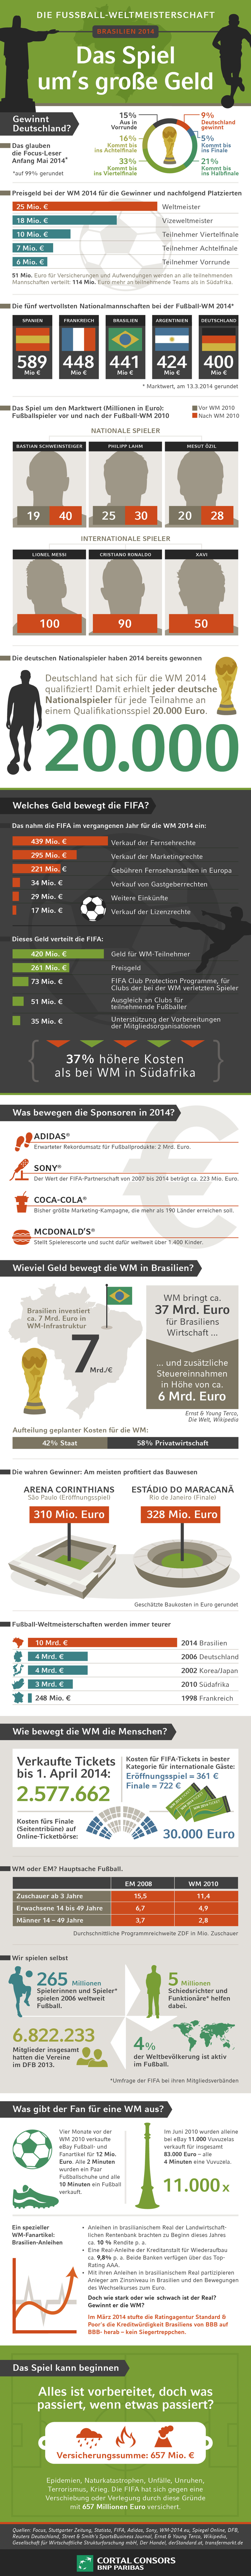 infografik Fussball und Geld Fußball WM in Brasilien 2014.jpg